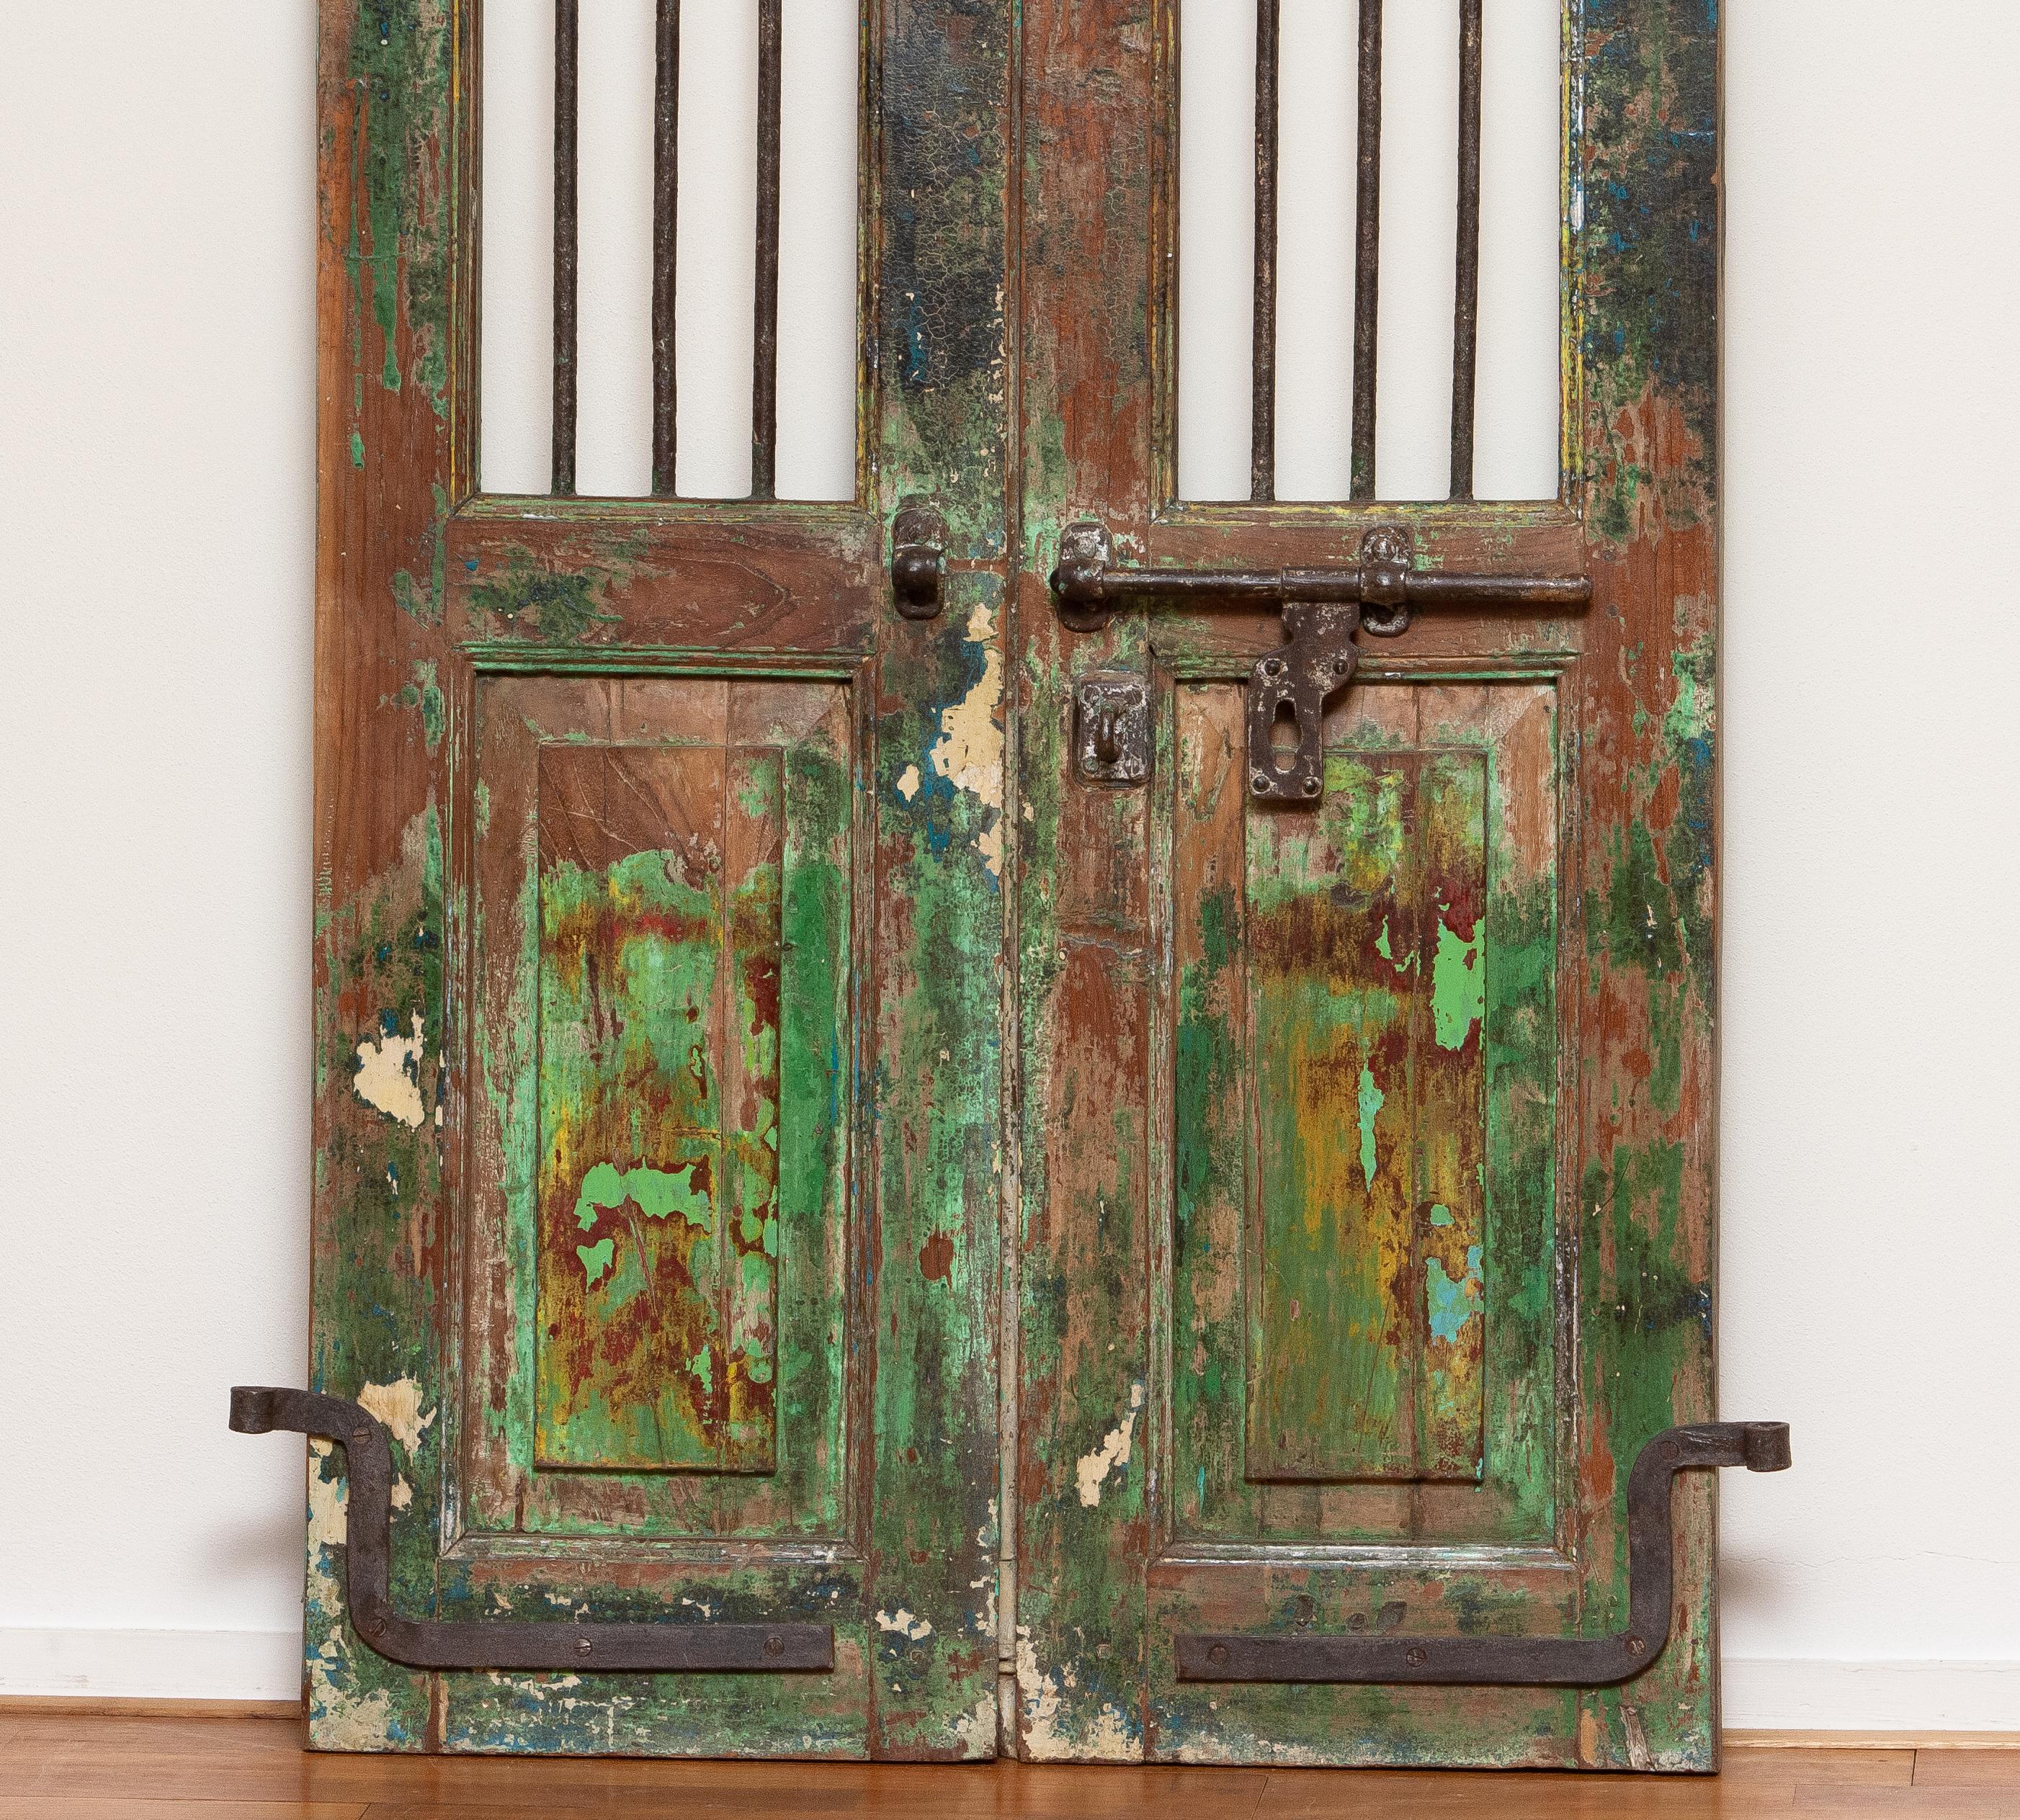 Indische Fenster- oder Türläden aus dem 19. Jahrhundert. Komplett mit Originalbehang und Metallmechanismus zum Verschließen. Die Türen sind mit Paneelen versehen, und über dem Schließmechanismus befinden sich jeweils drei Stahlstangen. 
Diese Türen